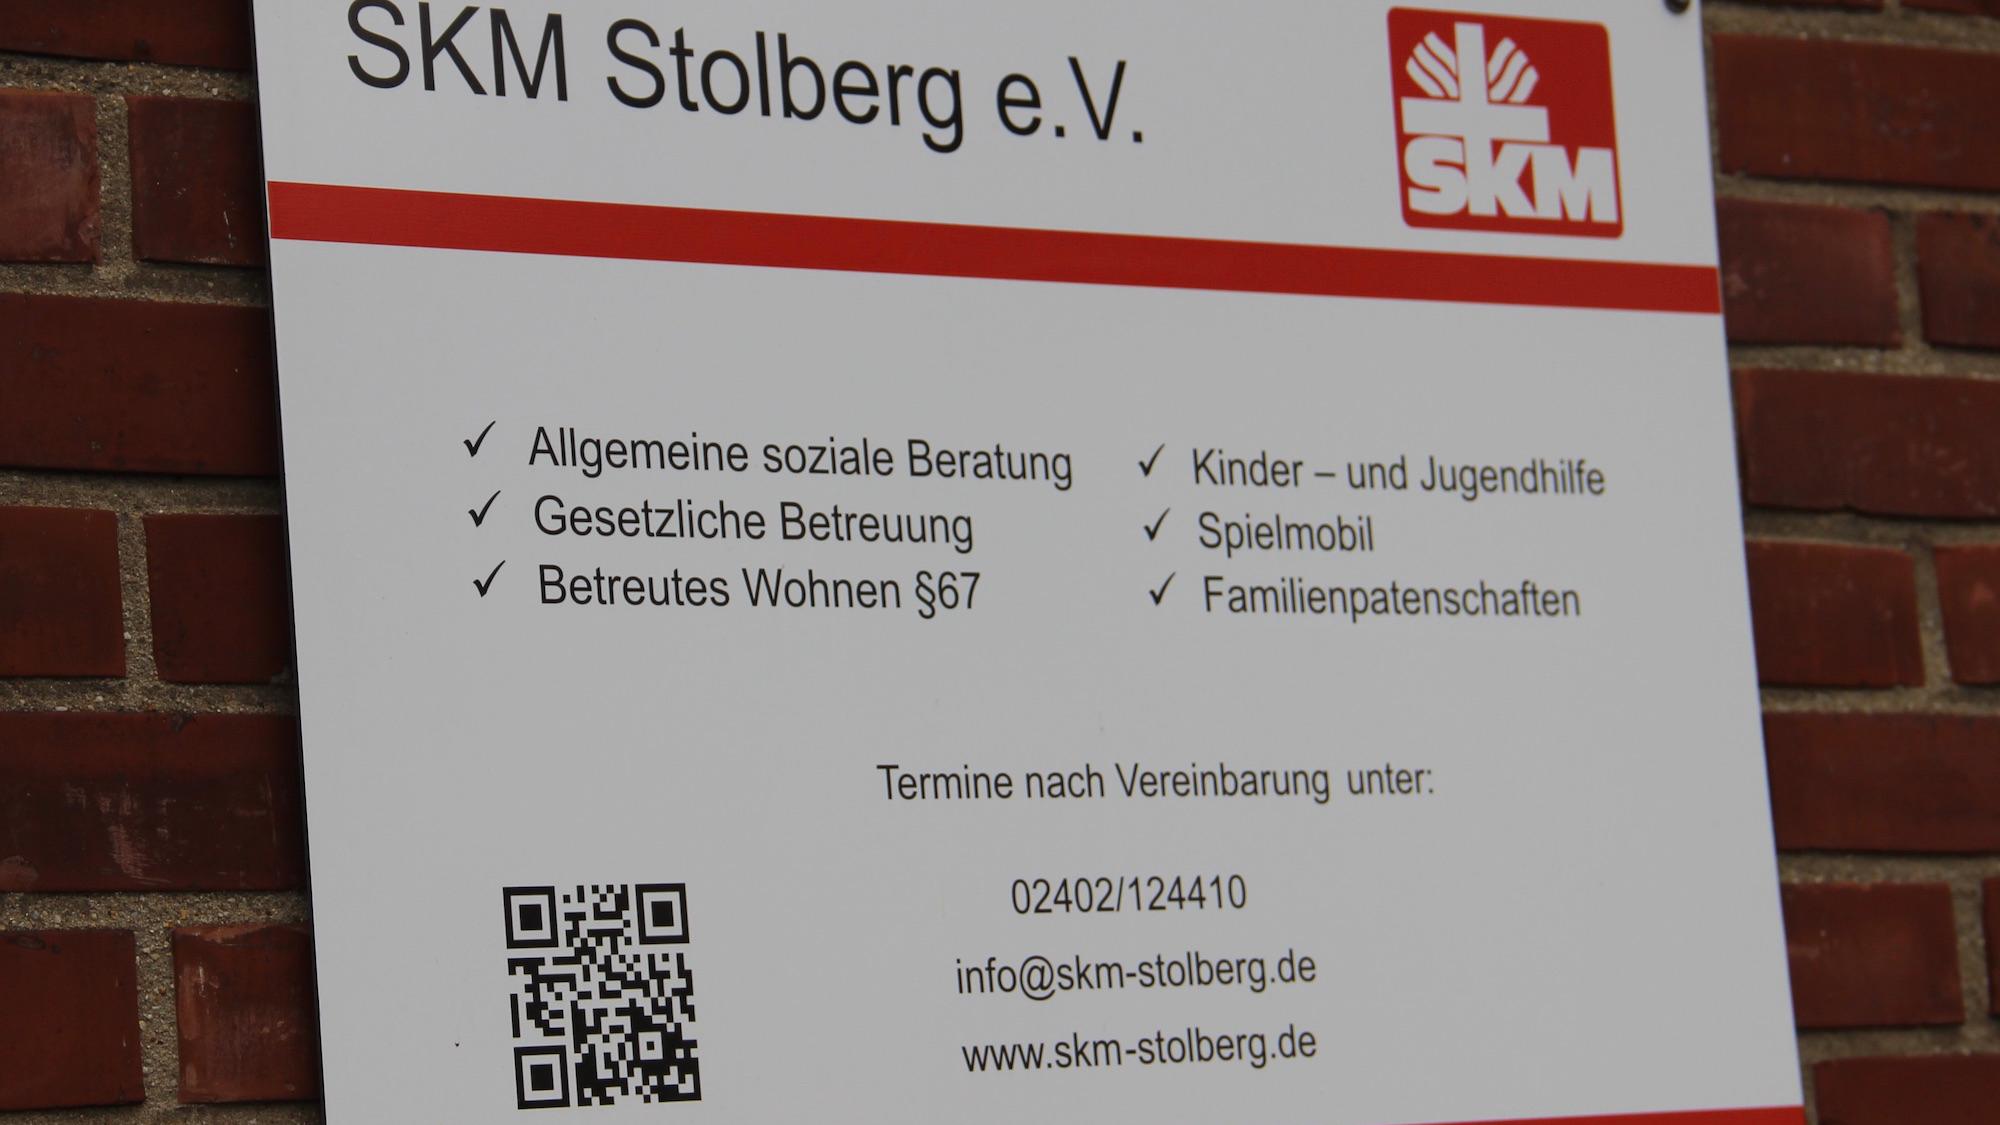 In vielen Feldern aktiv: der SKM Stolberg – und das bereits seit 1921. (c) Andrea Thomas